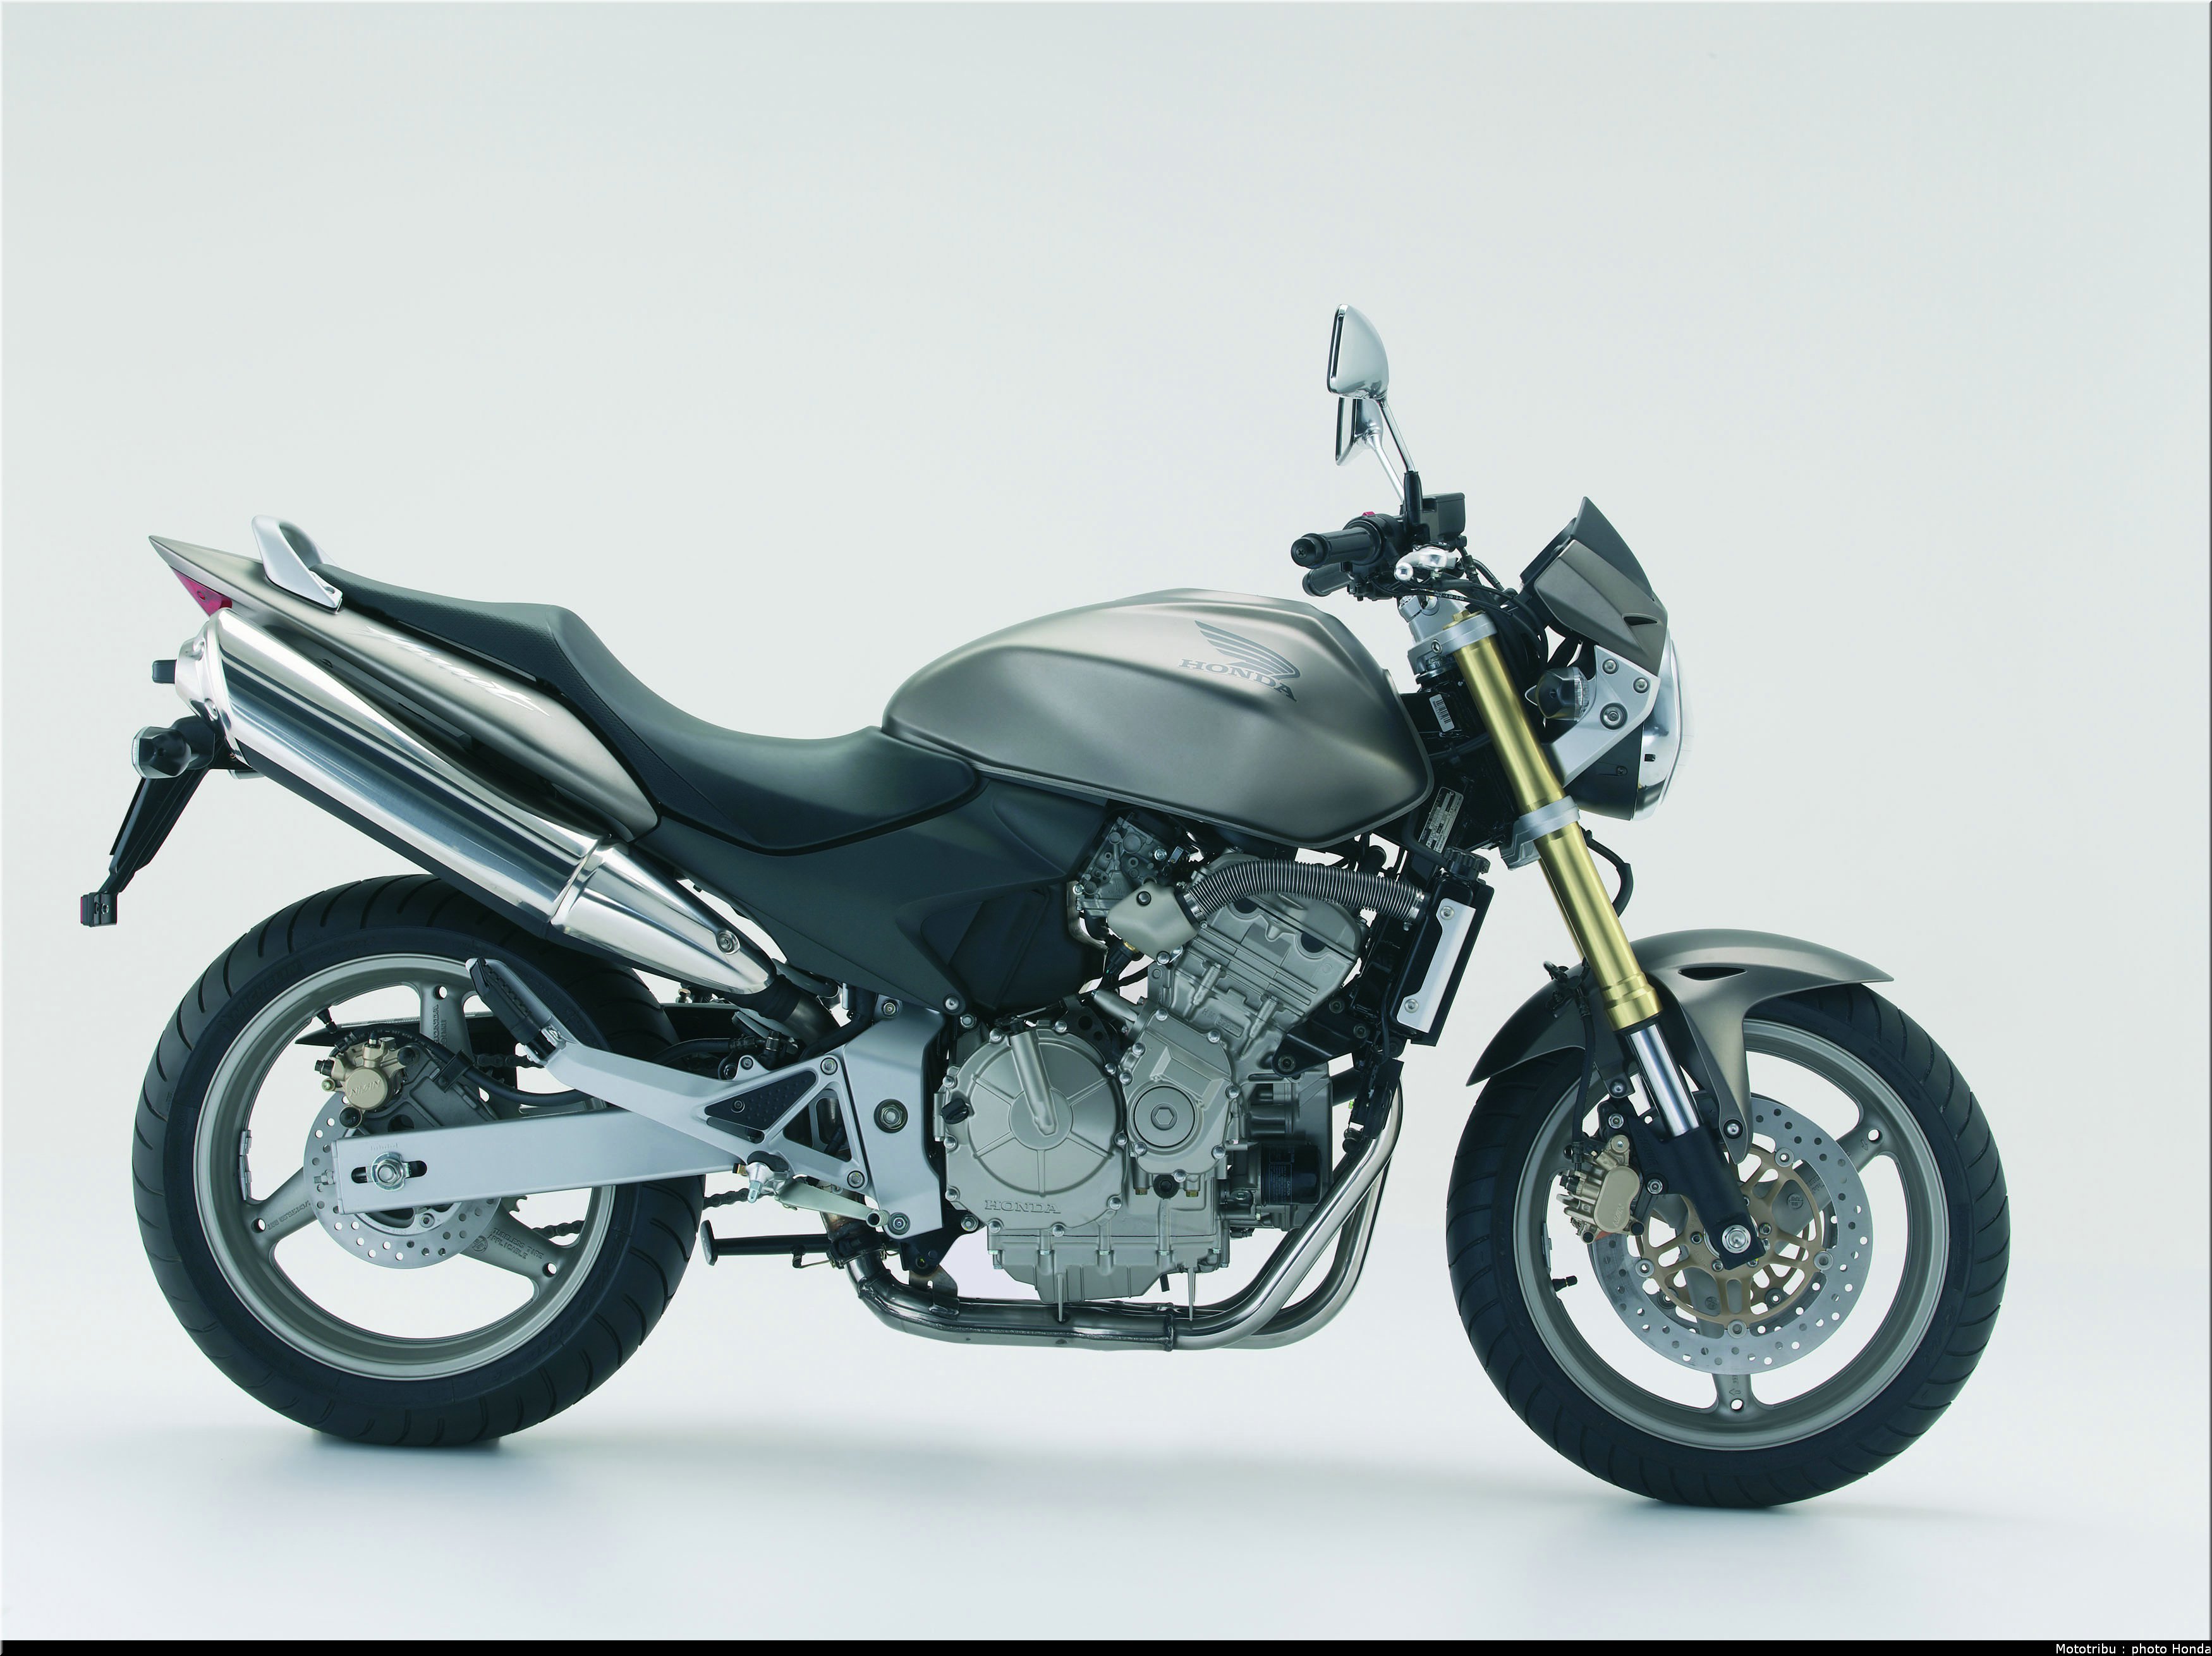 Мотоцикл honda cb900 f hornet 2002 — изучаем во всех подробностях